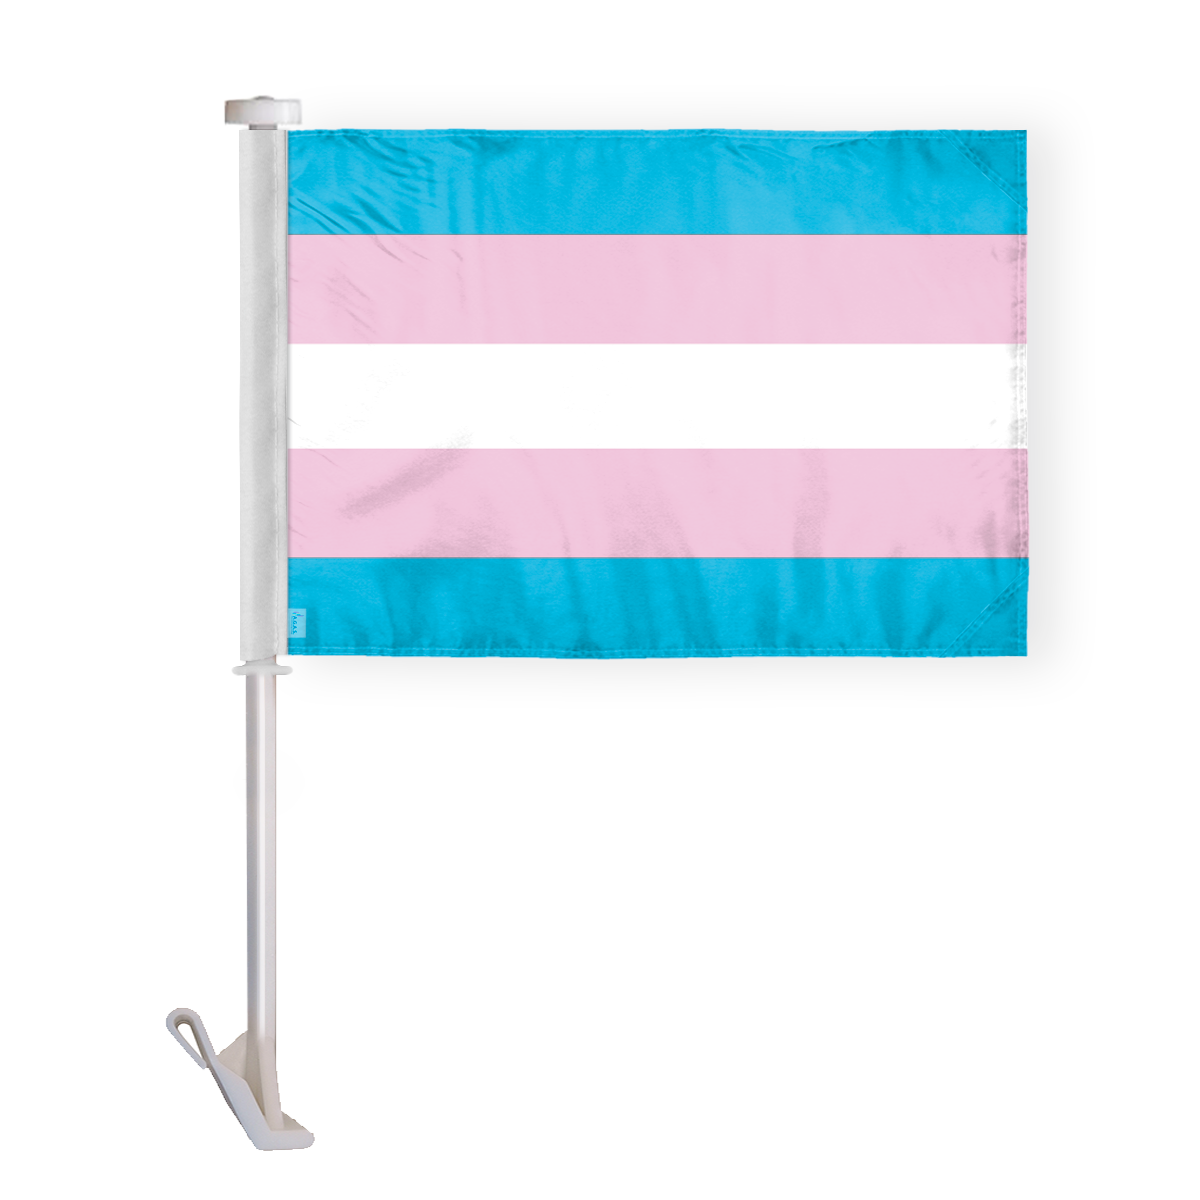 AGAS Transgender Car Window Flag 10.5x15 inch